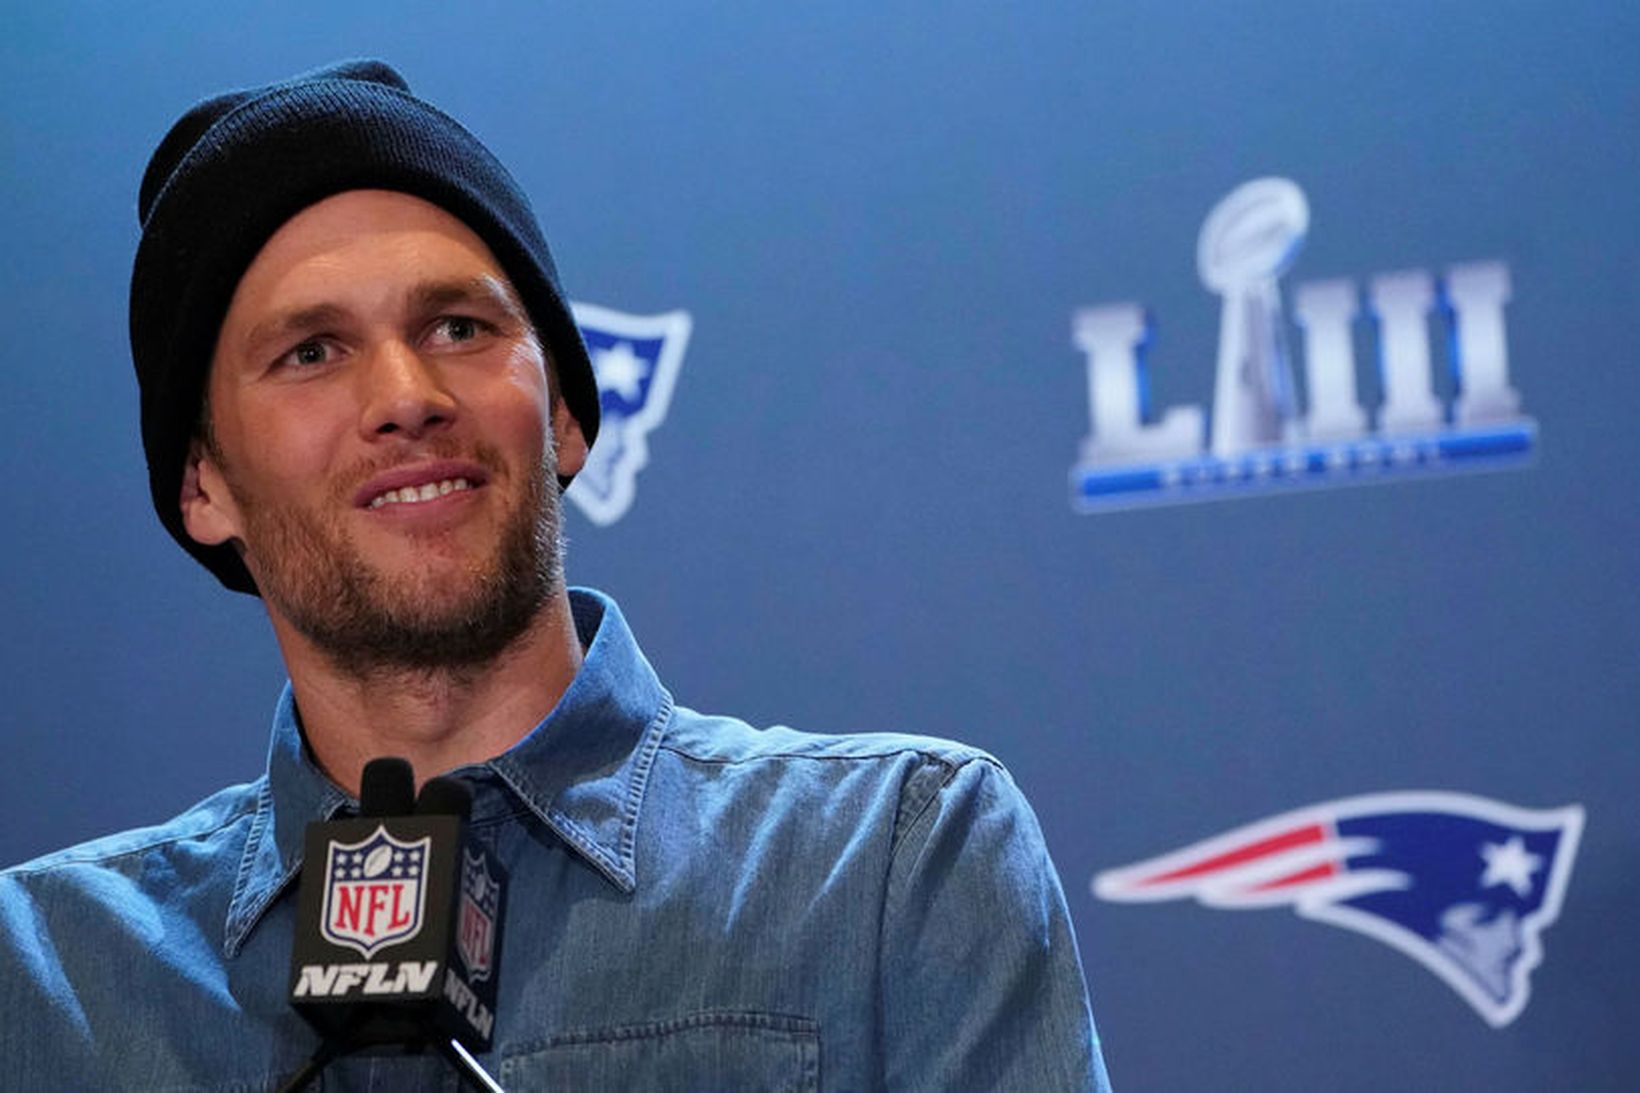 Tom Brady, leikstjórnandi New England Patriots, er sigursælasti leikmaður NFL-deildarinnar …